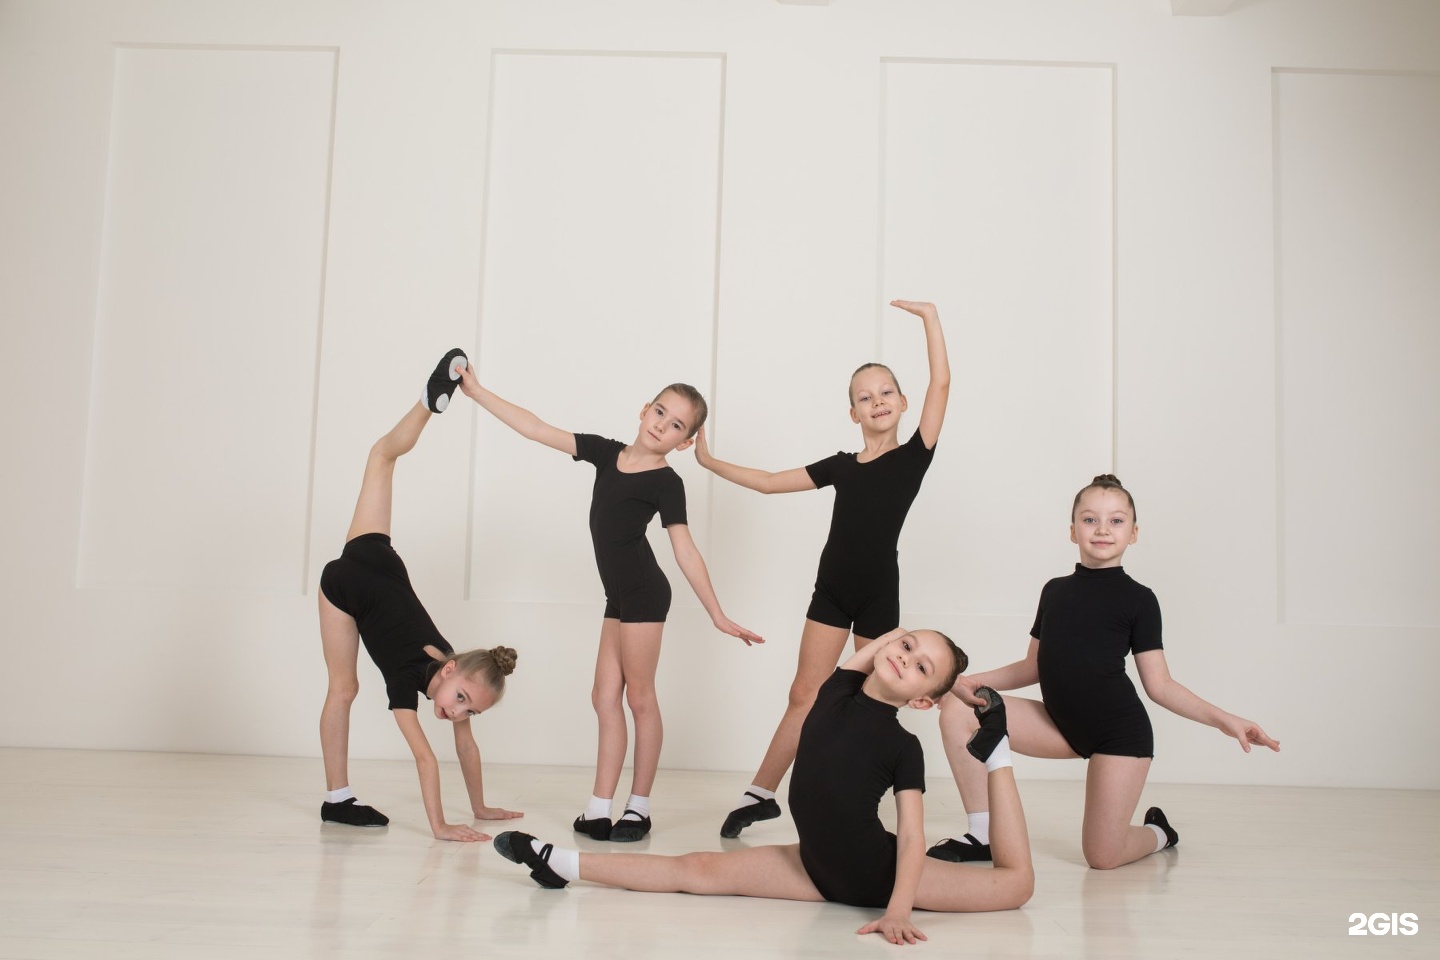 Студия детского эстрадного танца. Alba Dance Studio Тольятти. Топ лучших танцевальных студий в Тольятти. Школа танцев тольятти